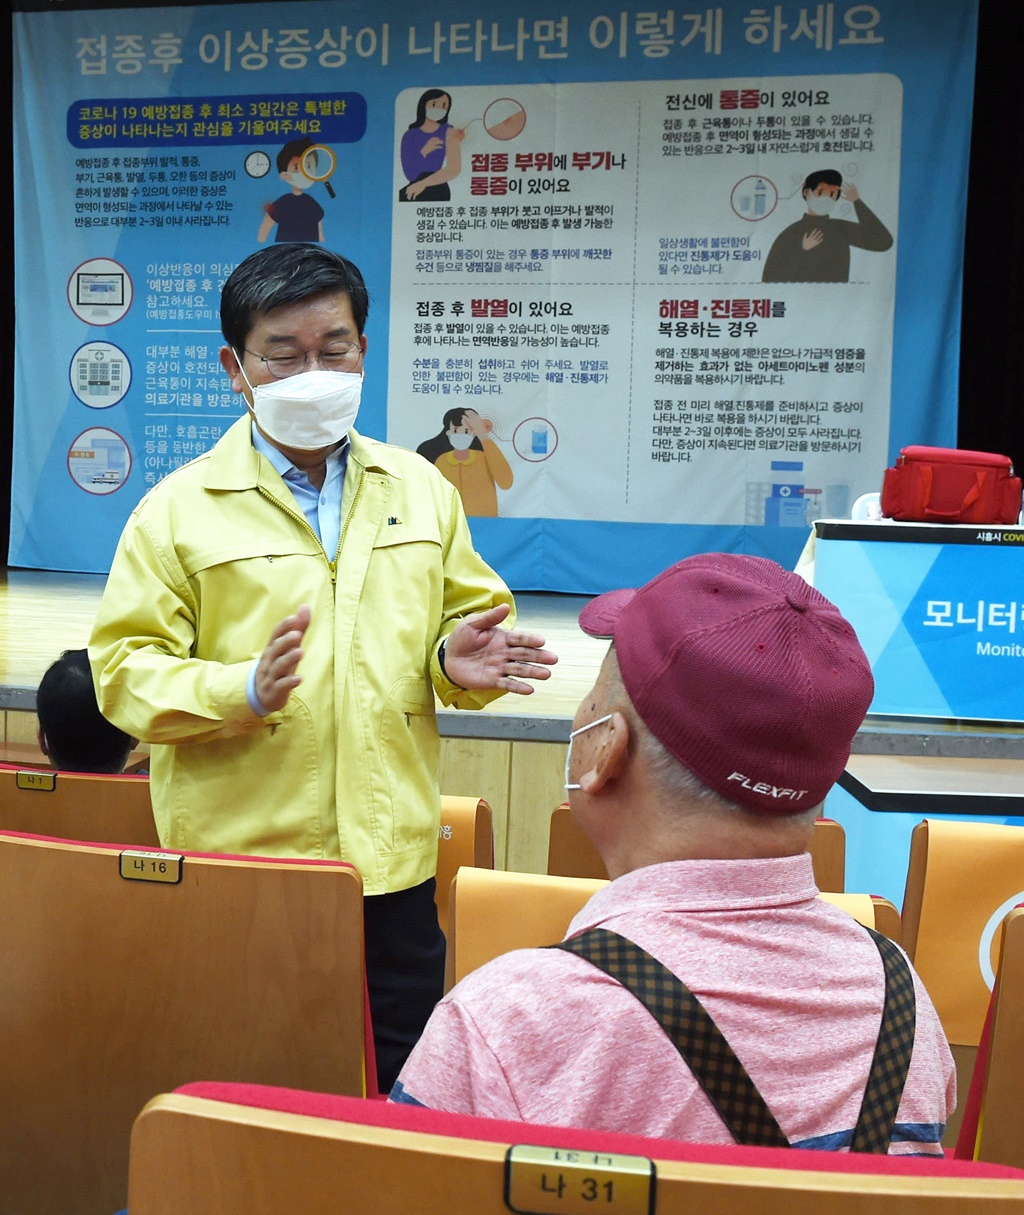 전해철 장관이 25일 오전 경기도 시흥시 소재 코로나-19 백신 예방접종센터(정왕평생학습관)을 방문해 접종하기 위하여 대기중인 75세 시민과 불편사항에 대해 묻고, 백신접종을 잘 맞으시라고 당부하였다.